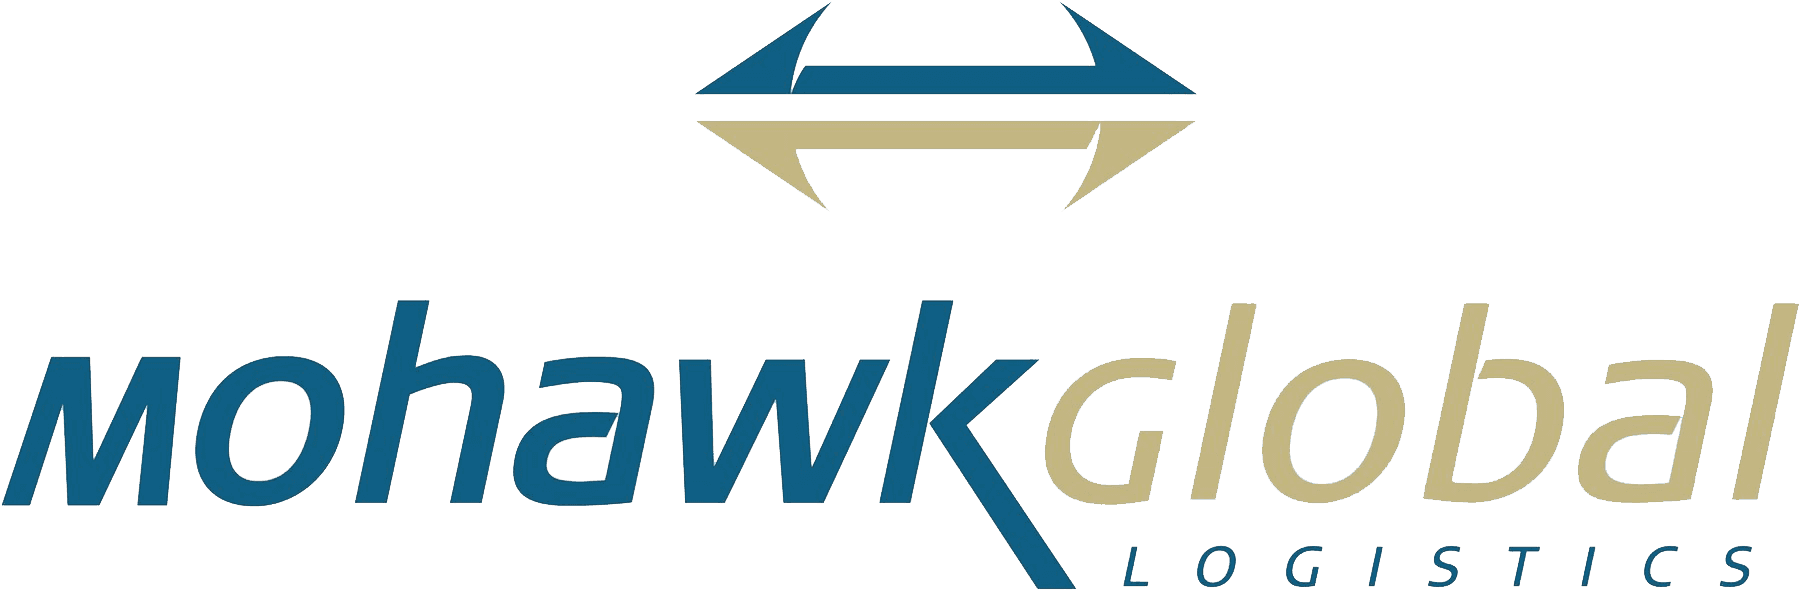 Mohawk Global Logistics Logo PNG